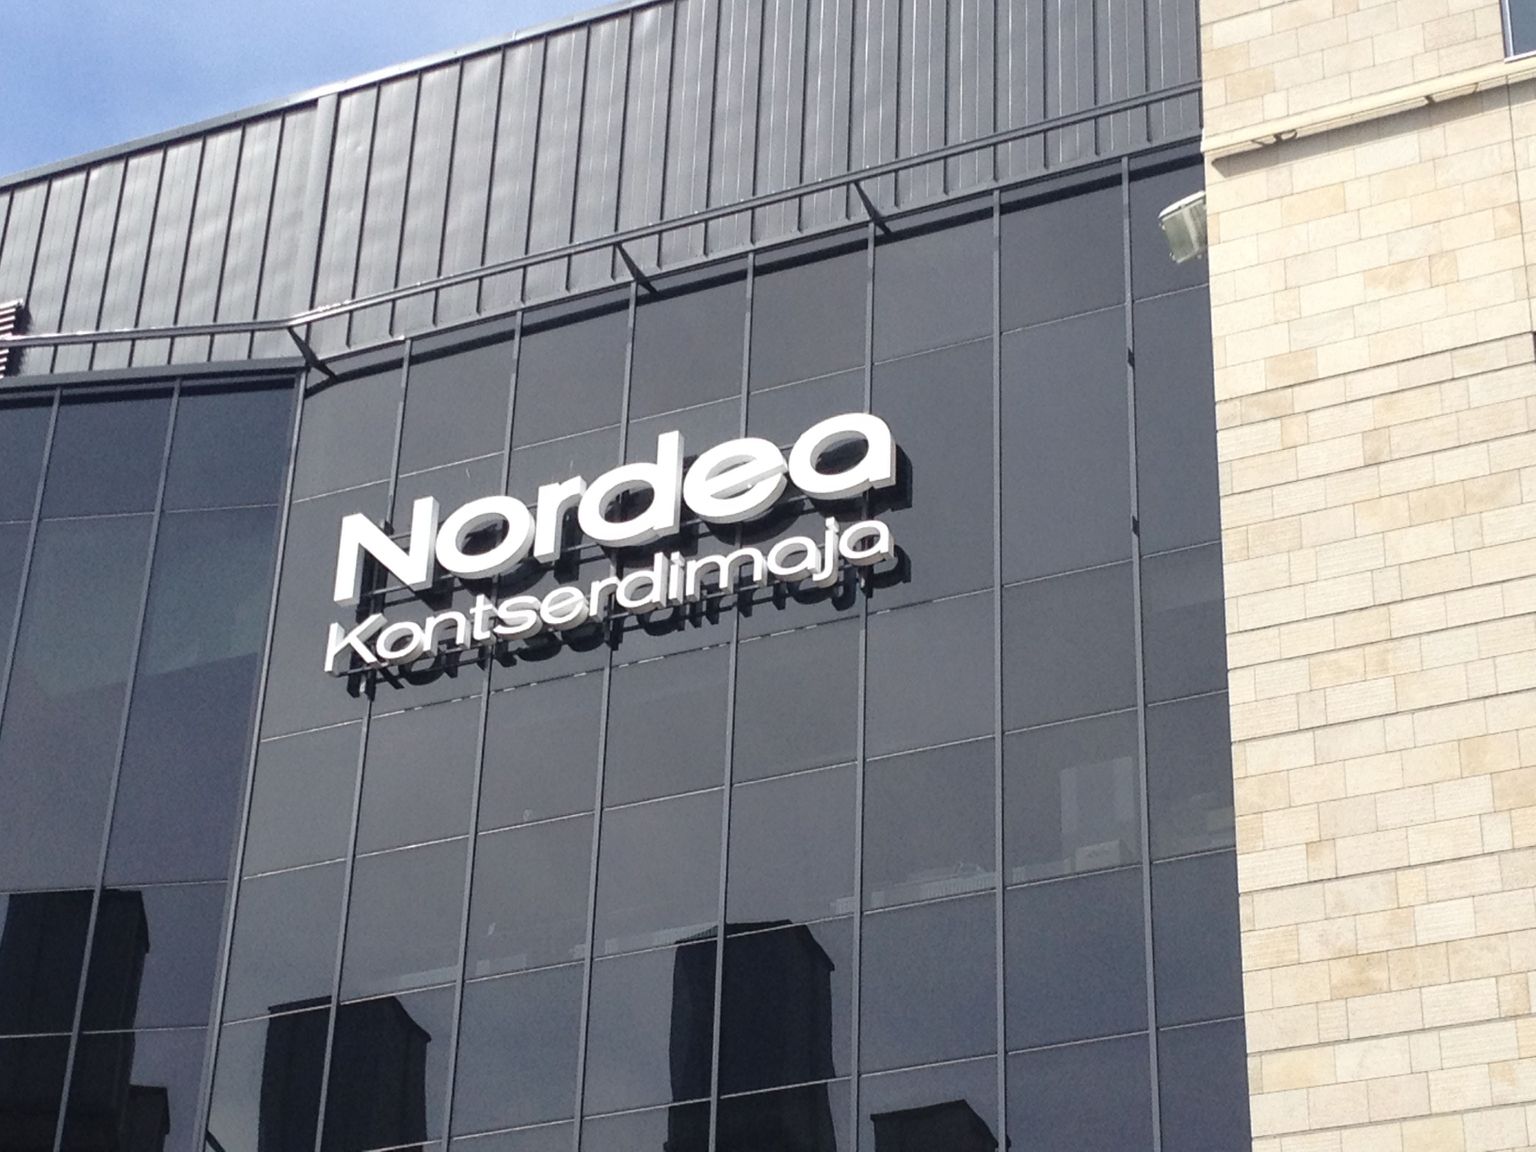 Концертный дом Nordea.